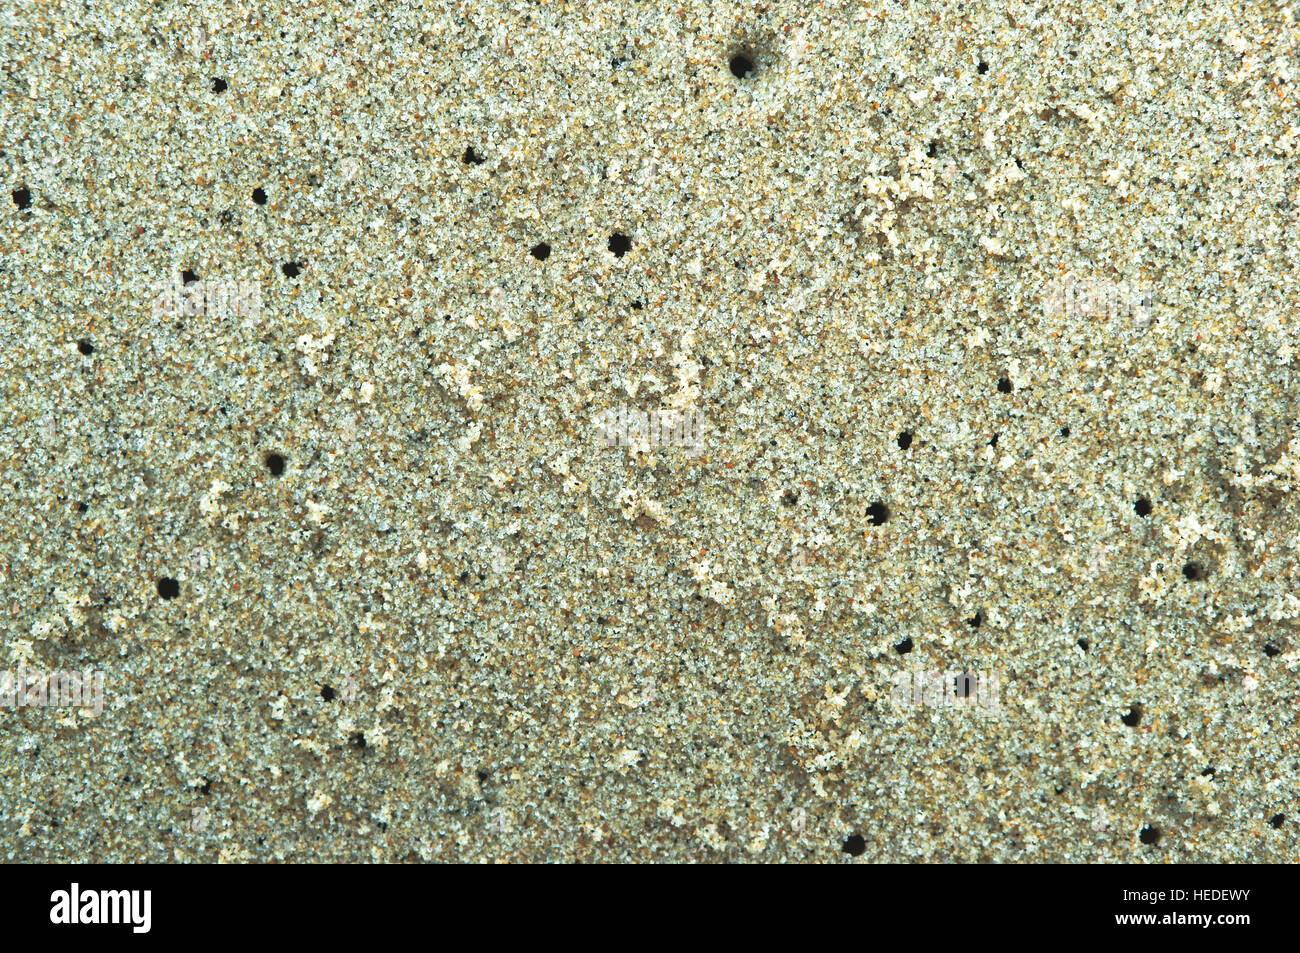 Le sable de la mer, port du sable, du sable coloré, plage de sable, plage de sable, sable de couleur Banque D'Images